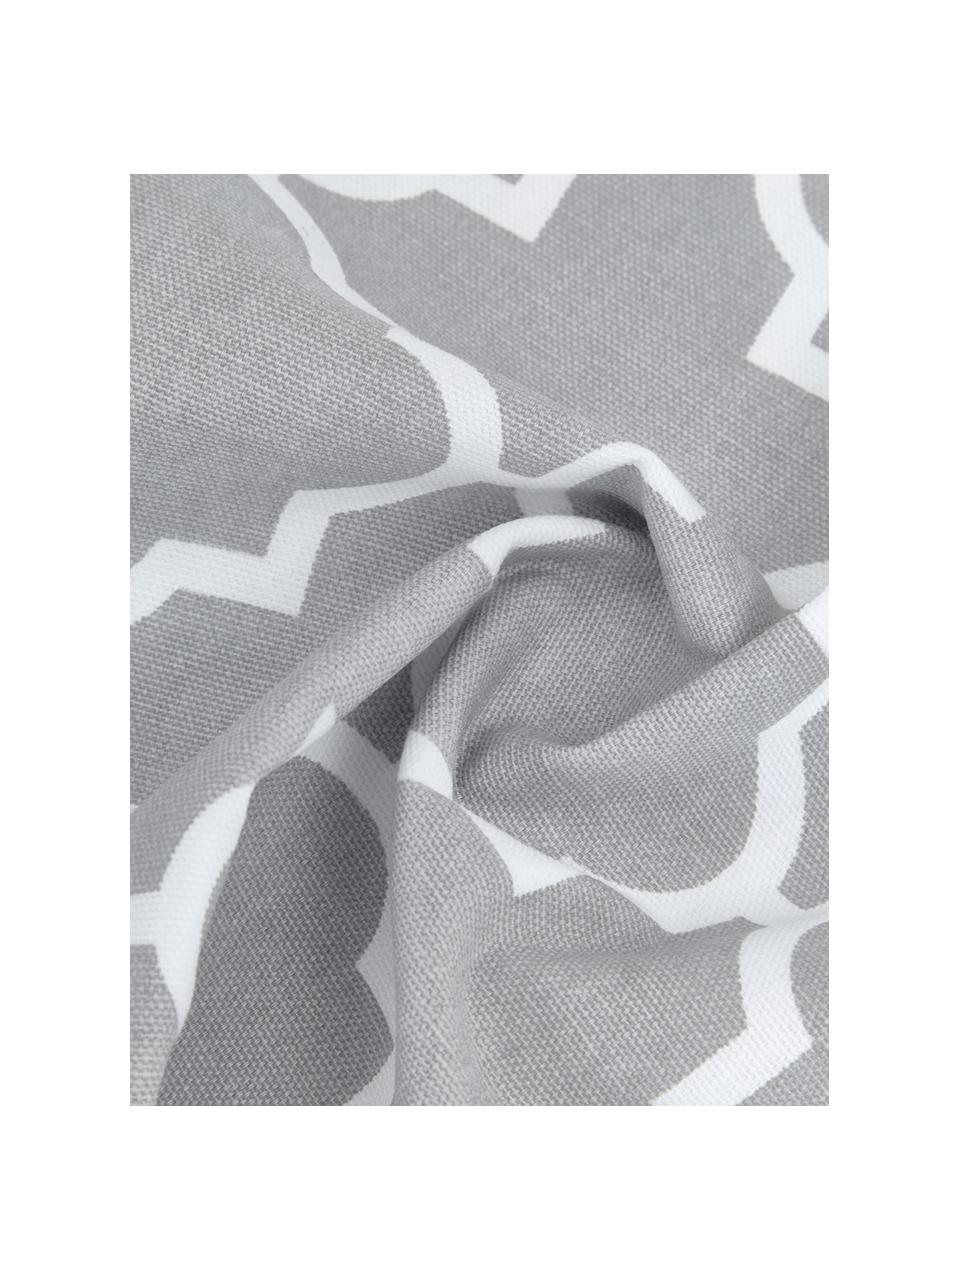 Kissenhülle Lana mit grafischem Muster, 100% Baumwolle, Grau, Weiss, B 45 x L 45 cm